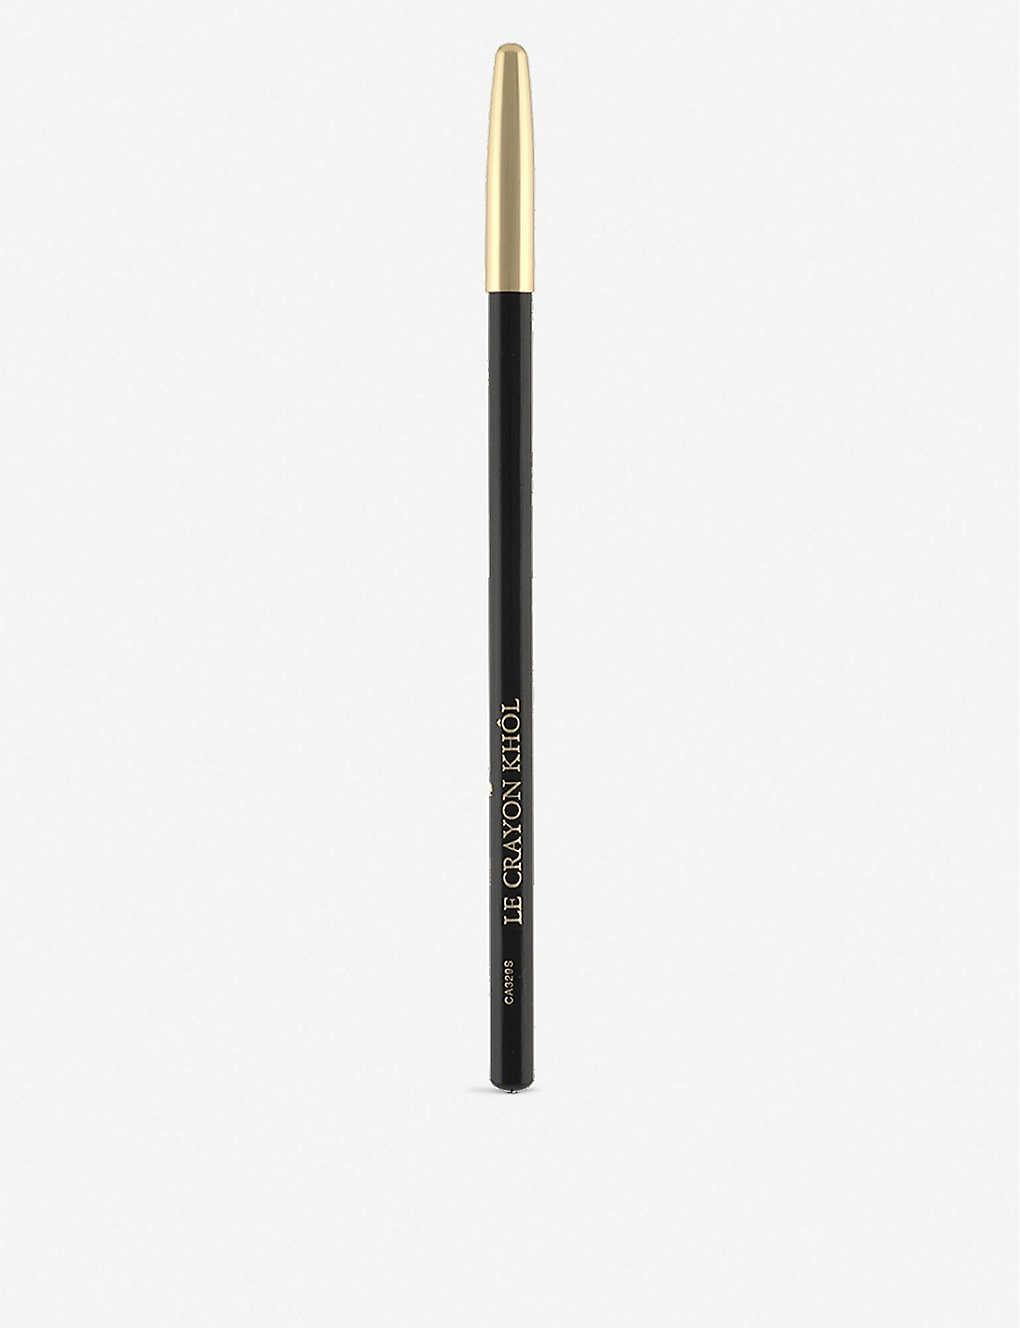 Lancôme Le Crayon Khol Eyeliner 01-Noir